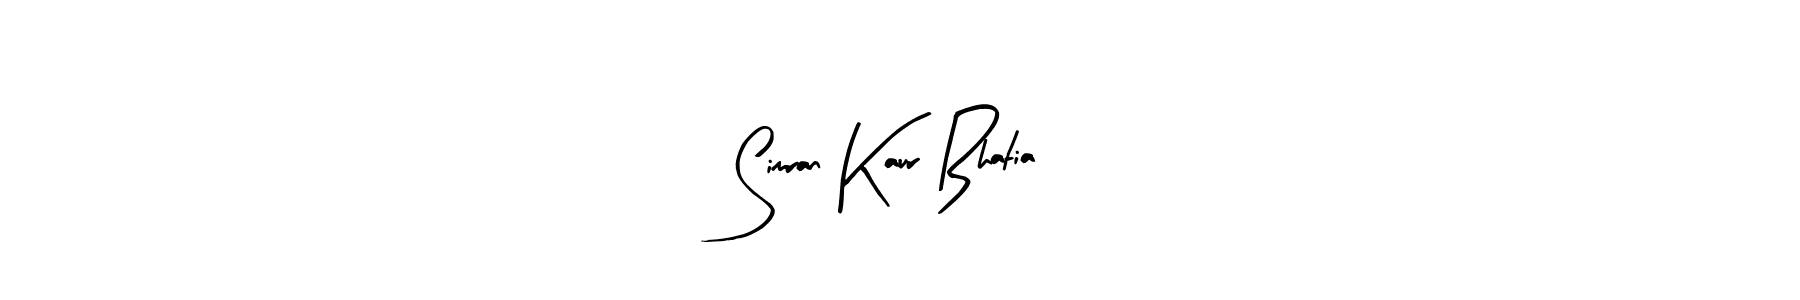 83+ Simran Kaur Bhatia Name Signature Style Ideas | Superb E-Sign